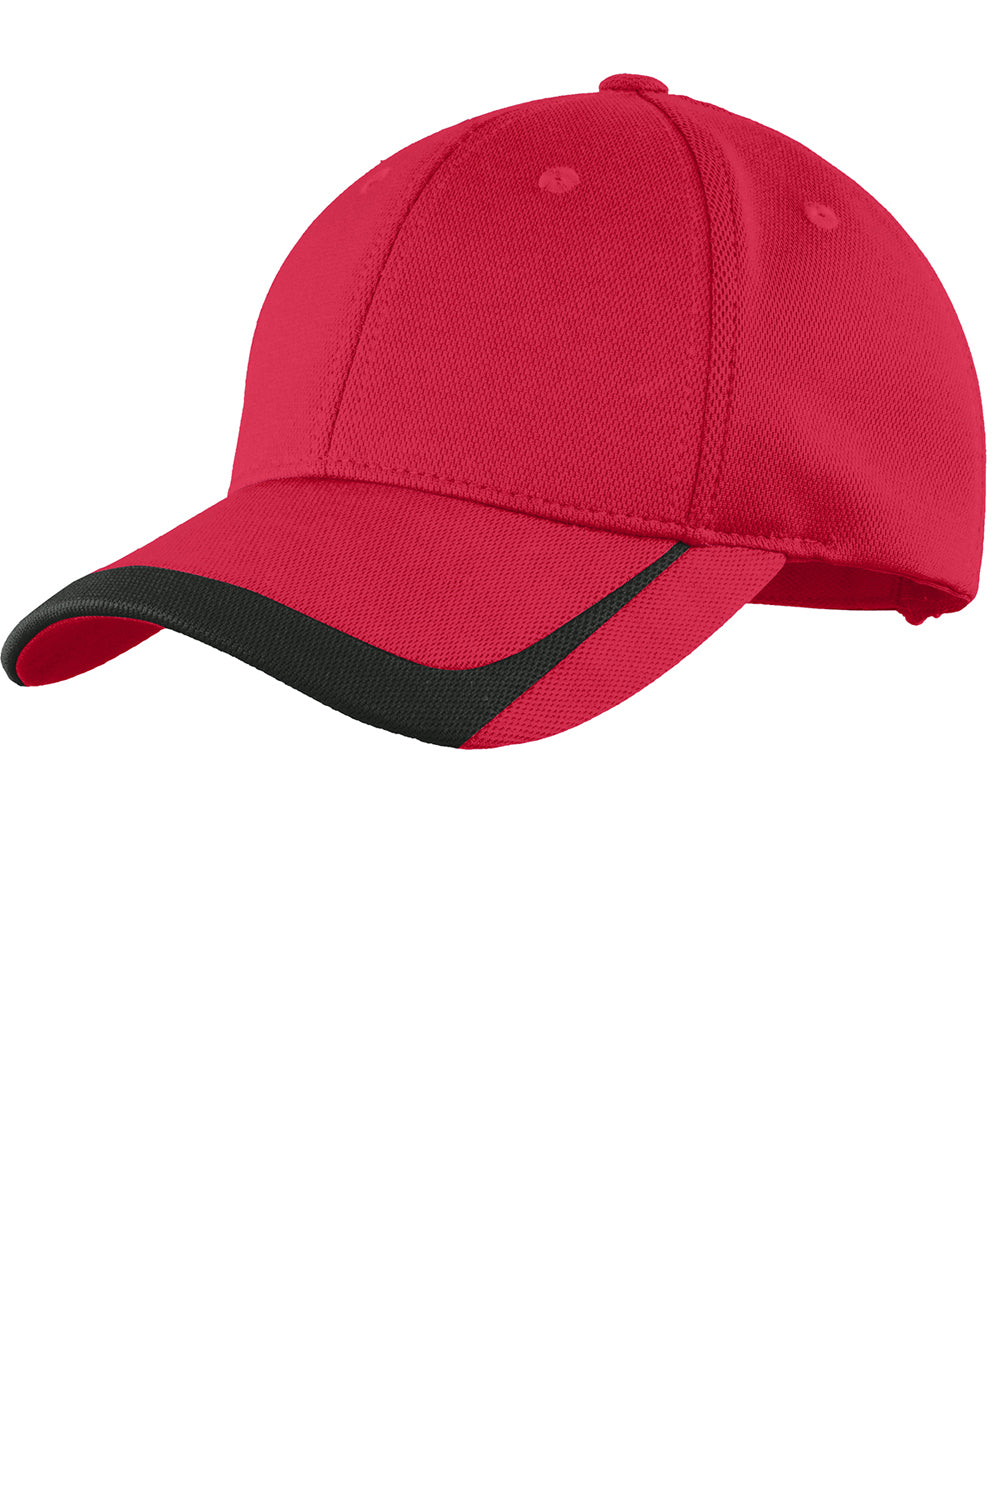 Sport-Tek STC24 Mens Moisture Wicking Adjustable Hat Red/Black Front